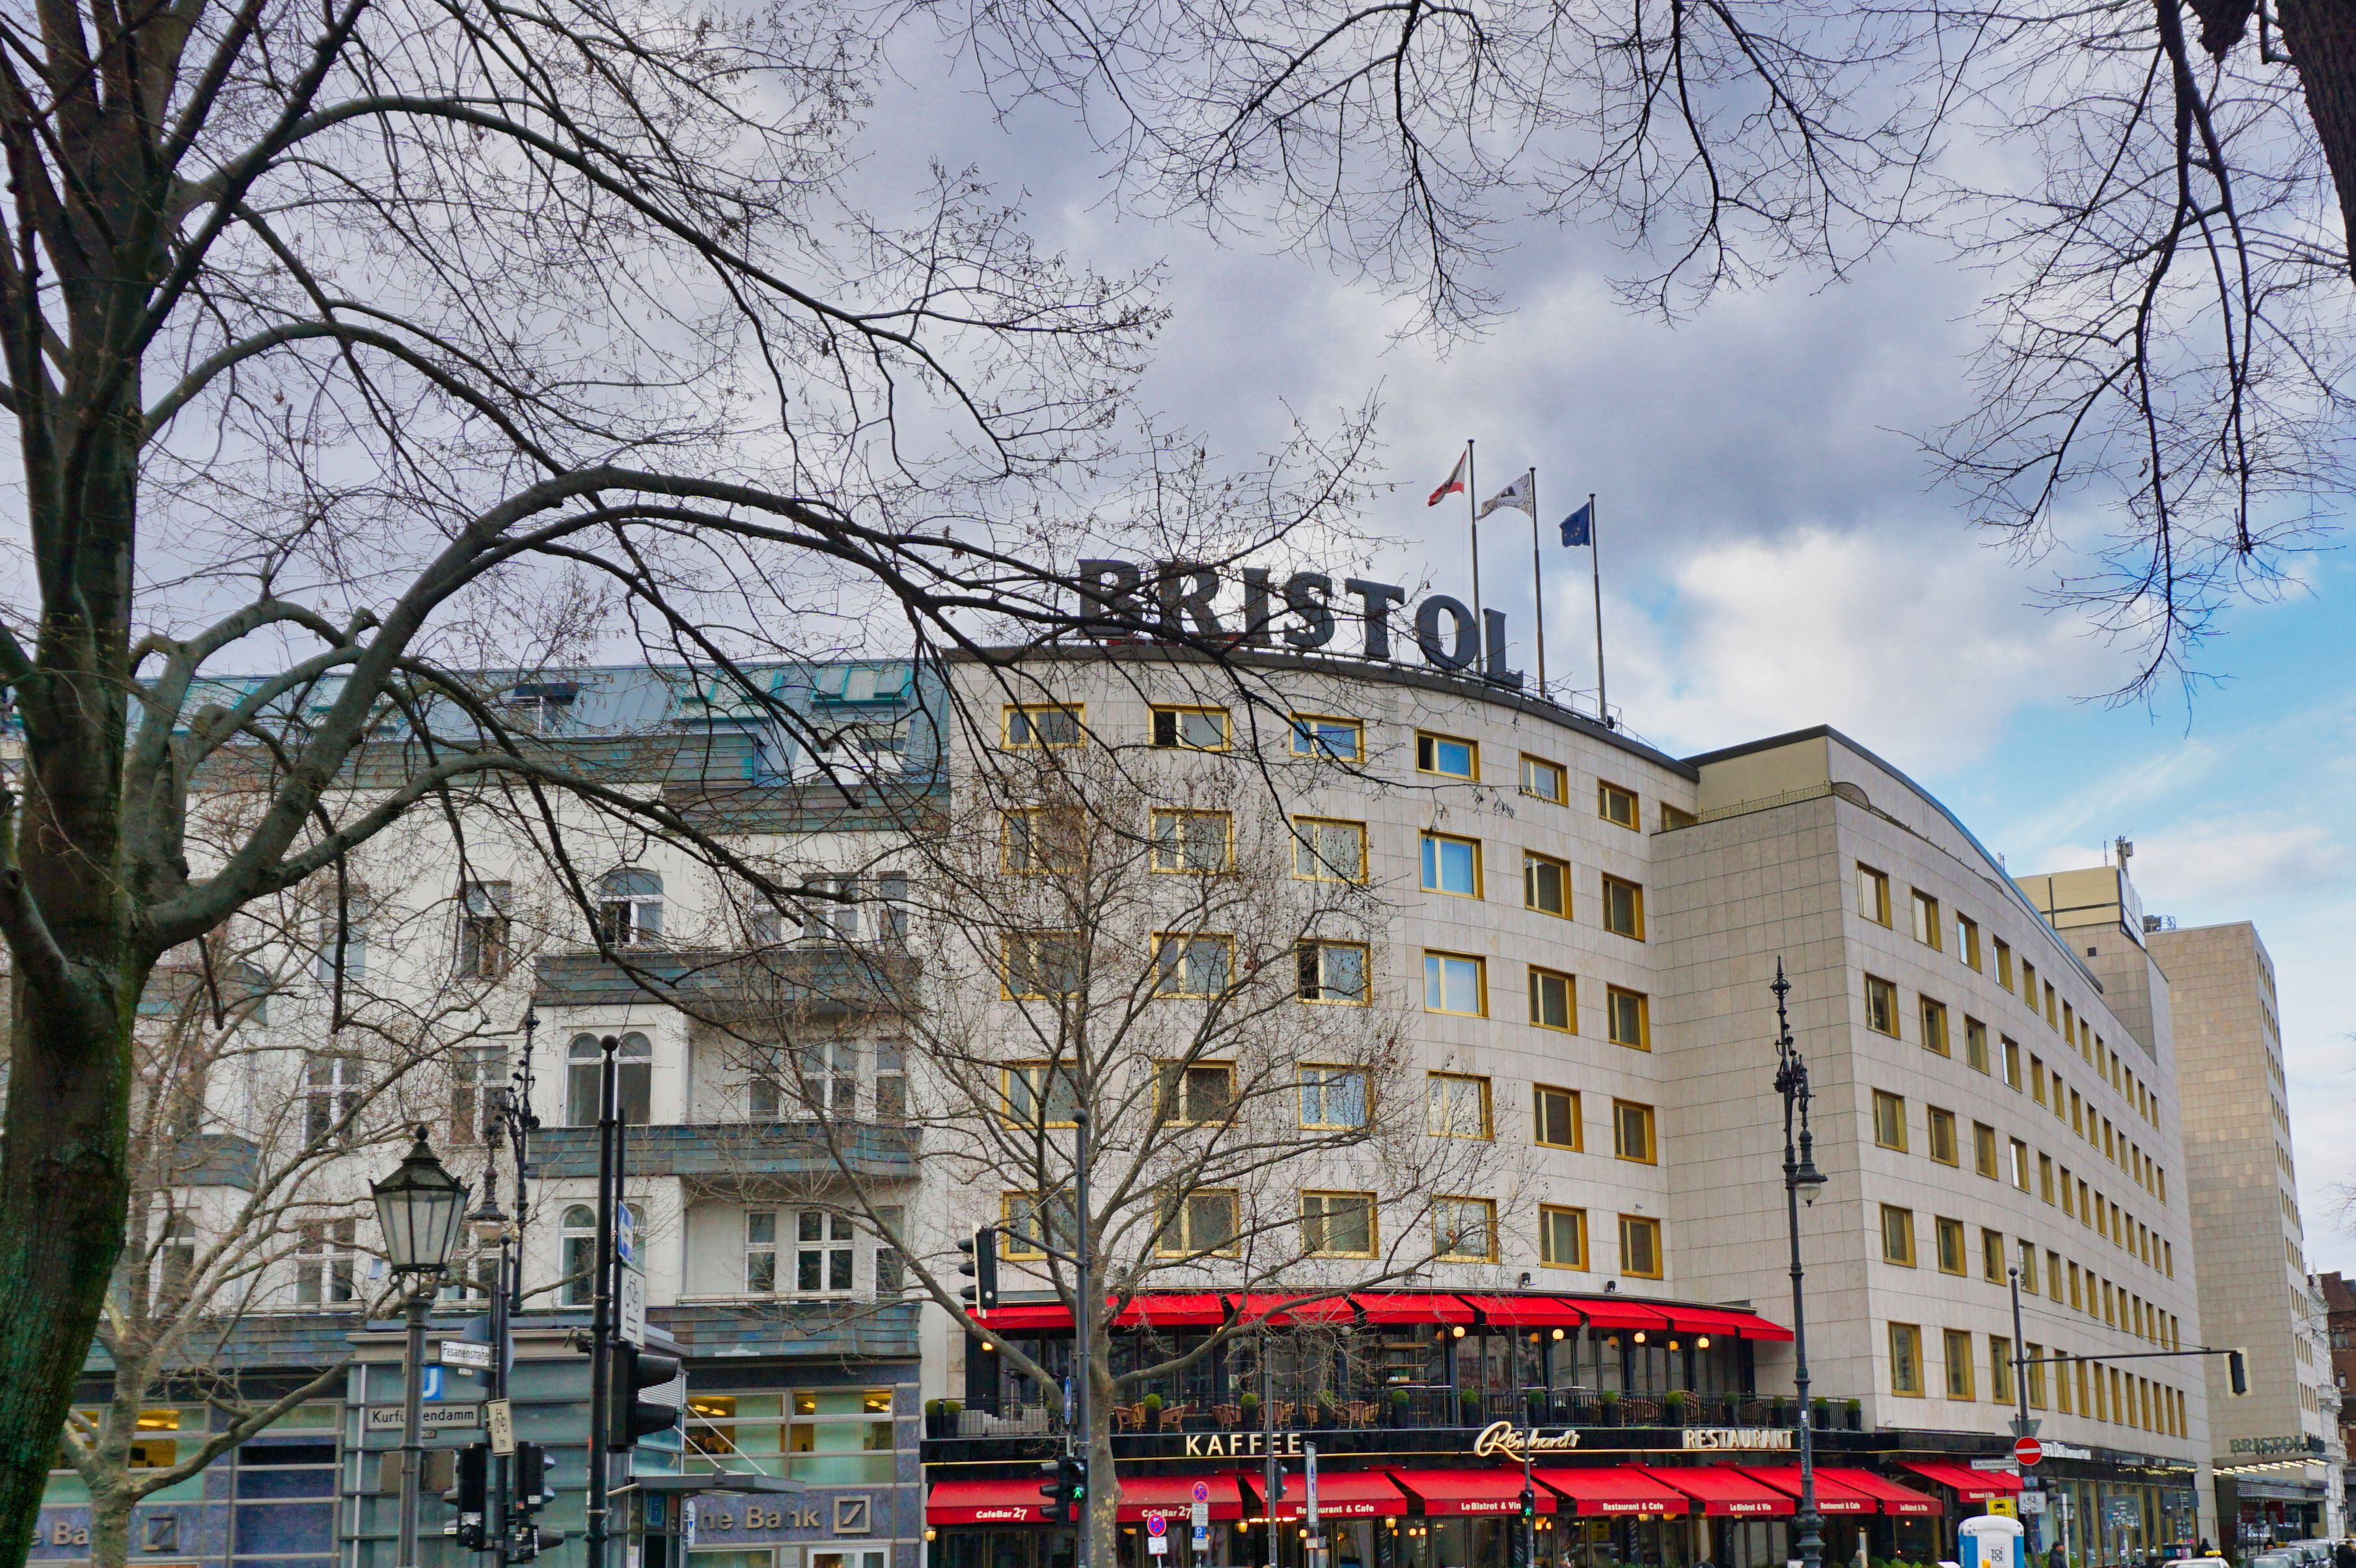 Hotel Bristol, Berlin.
